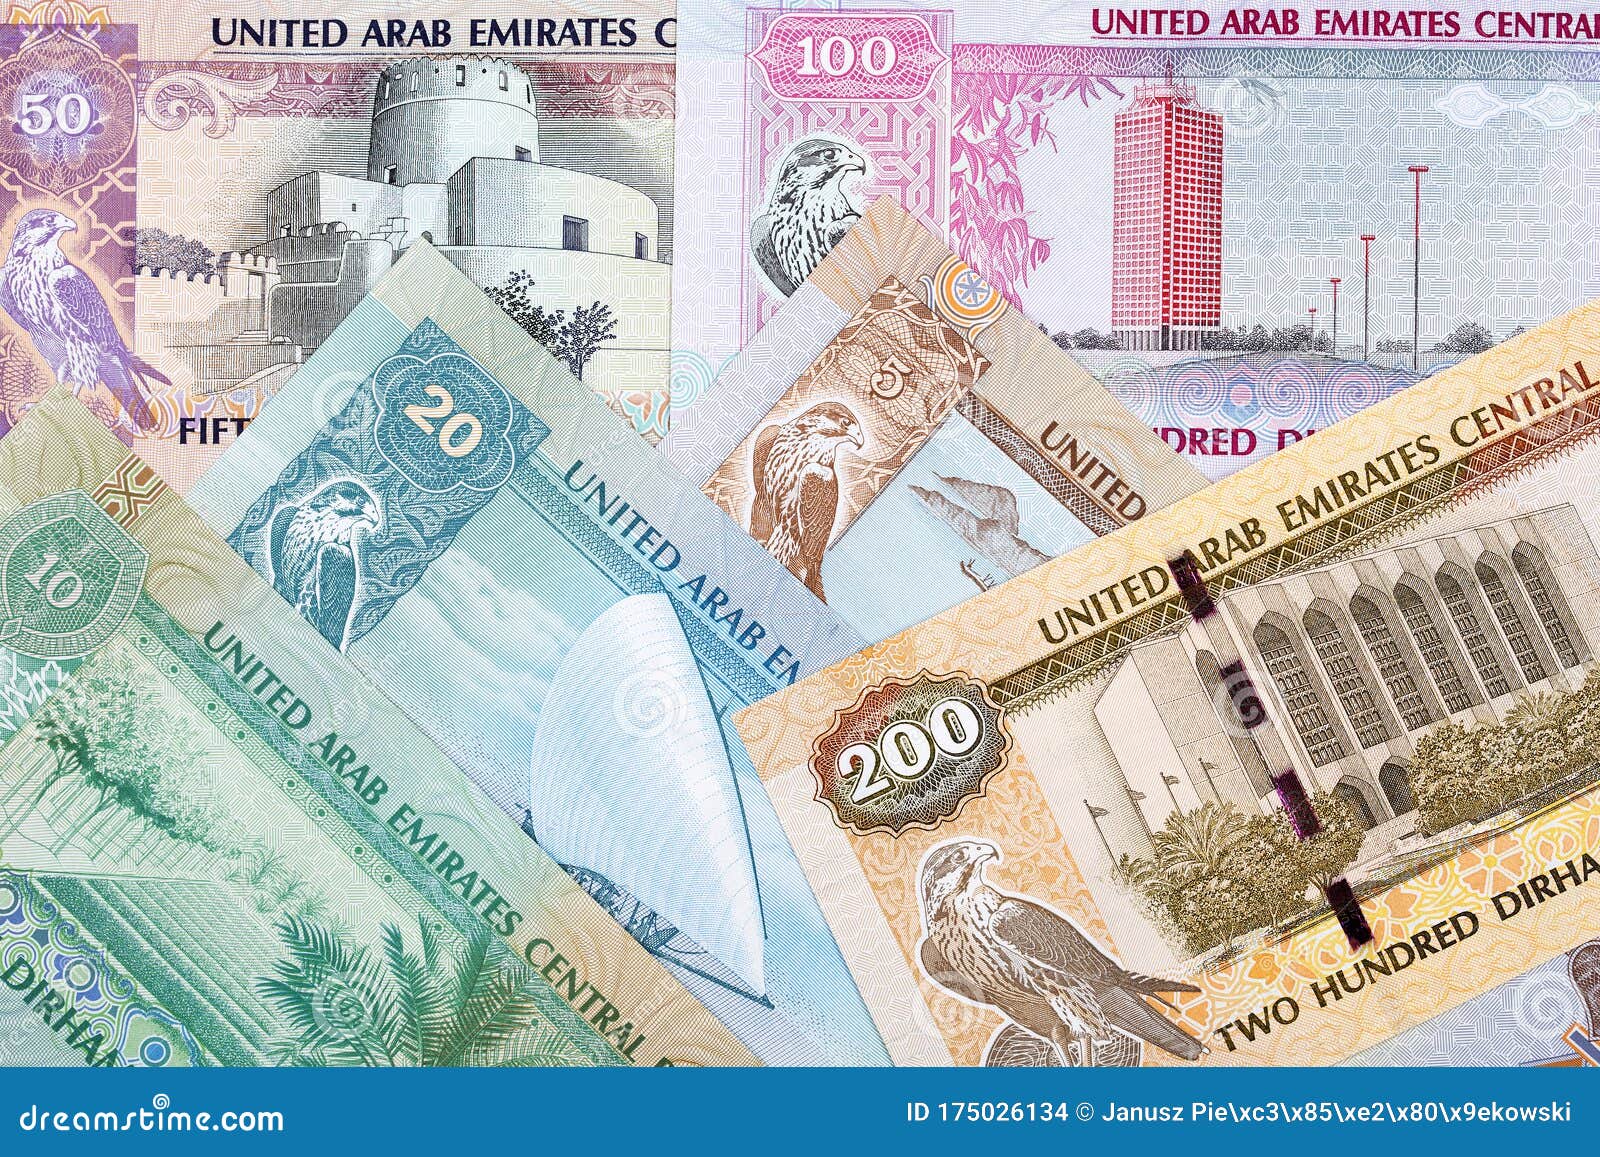 Курс обмена дирхам в дубае. Валюта Эмиратов. Деньги ОАЭ. Дирхамы ОАЭ. Национальная валюта Дубая.